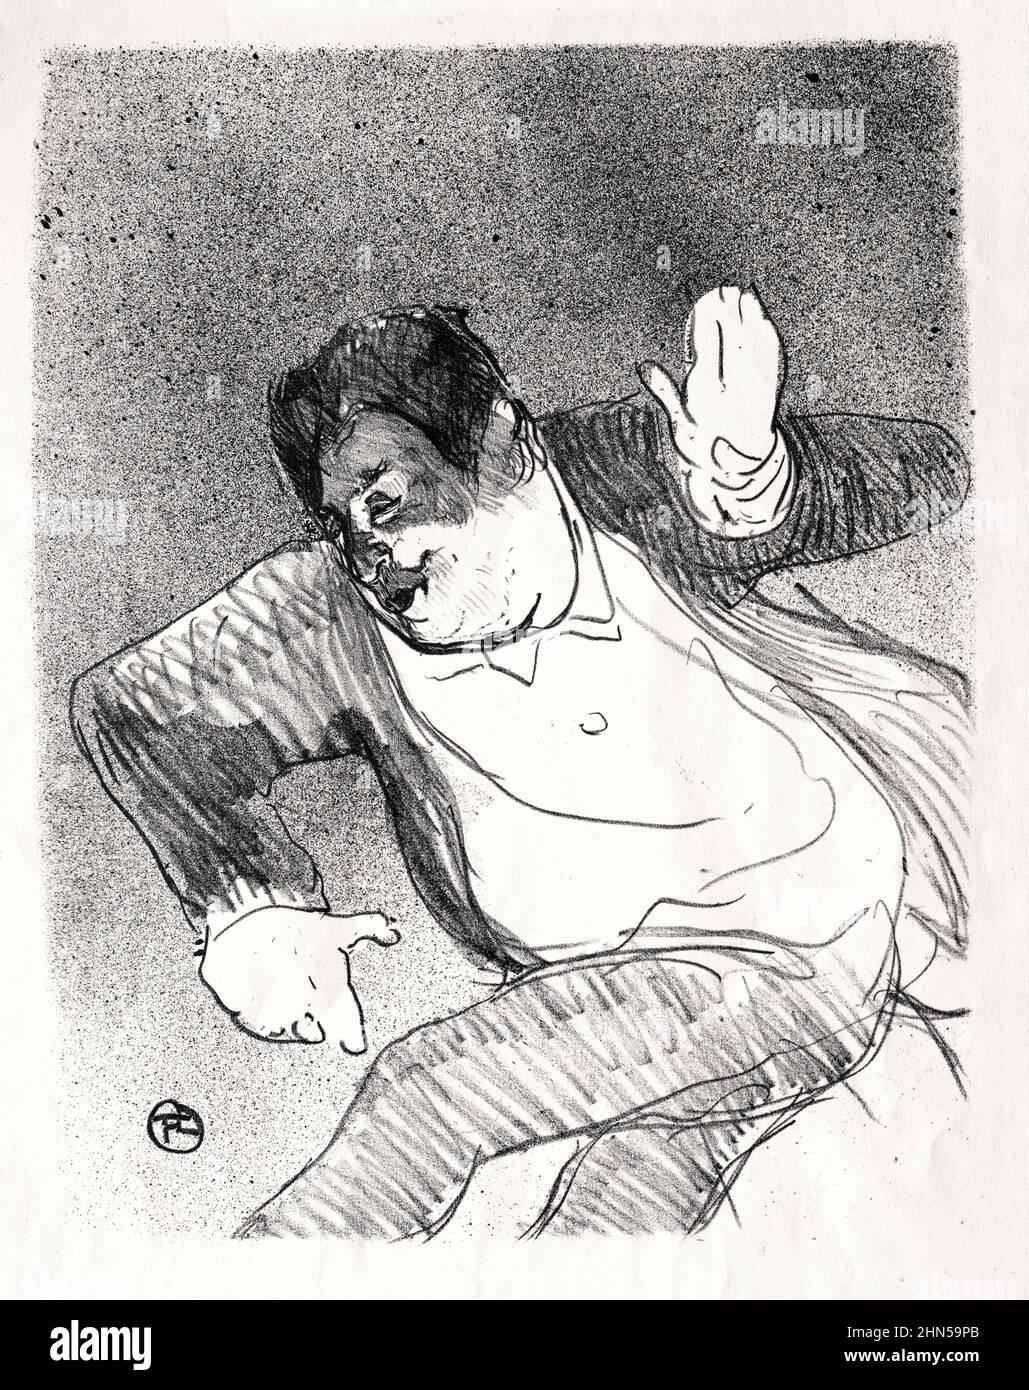 Caudieux (1893). Antique vintage drawing by Henri Toulouse-Lautrec. Stock Photo